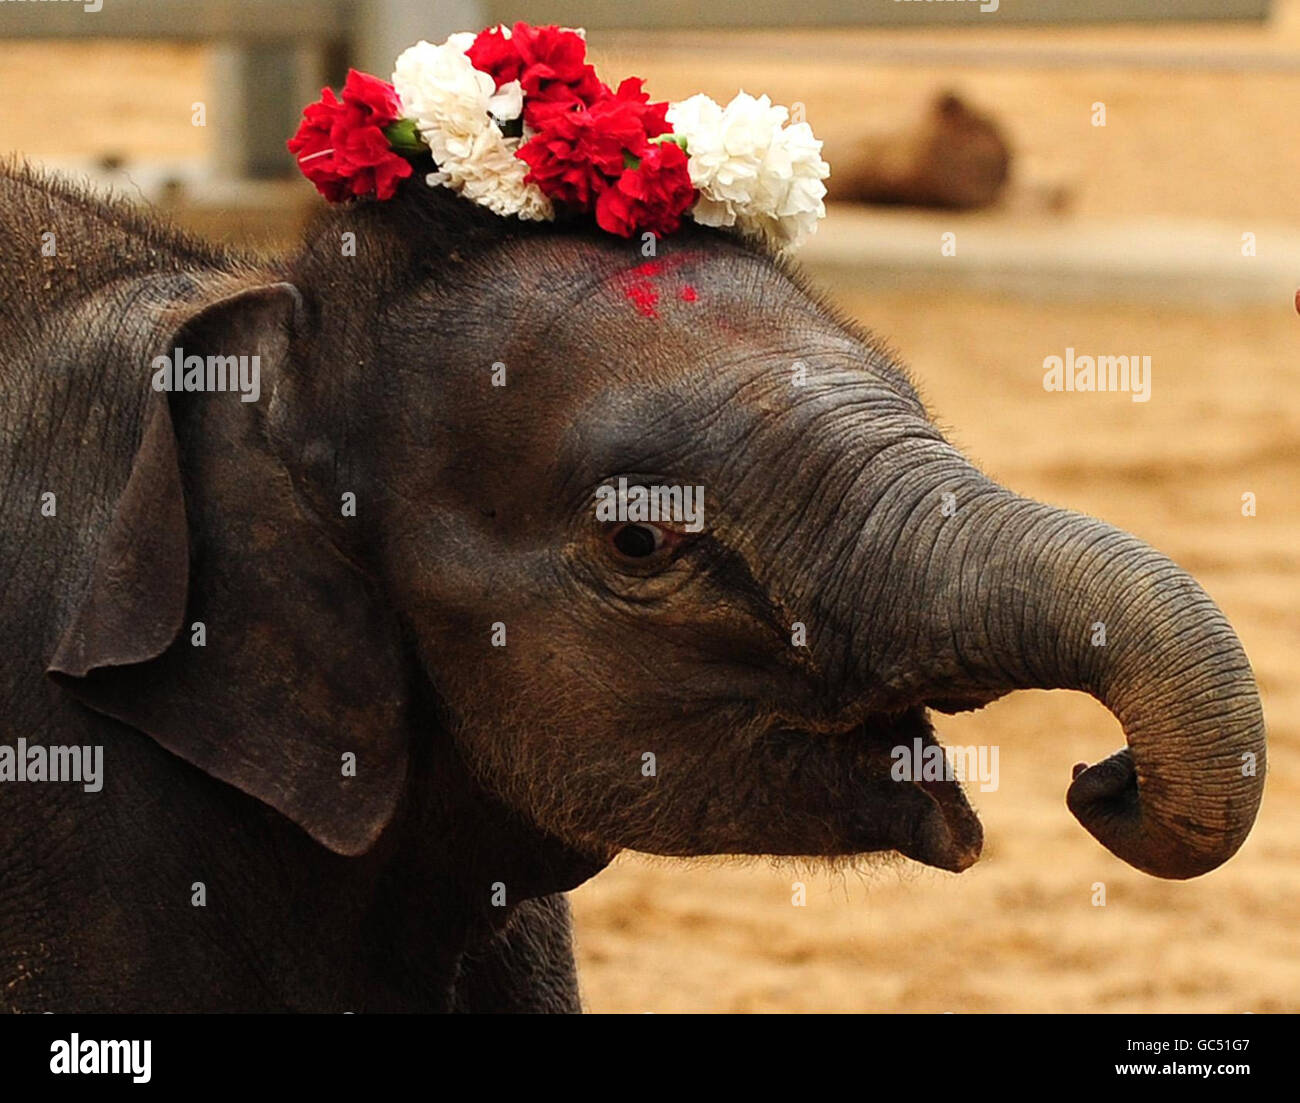 Indianapolis Zoo Welcomes Baby Elephant Calf - Indianapolis Zoo